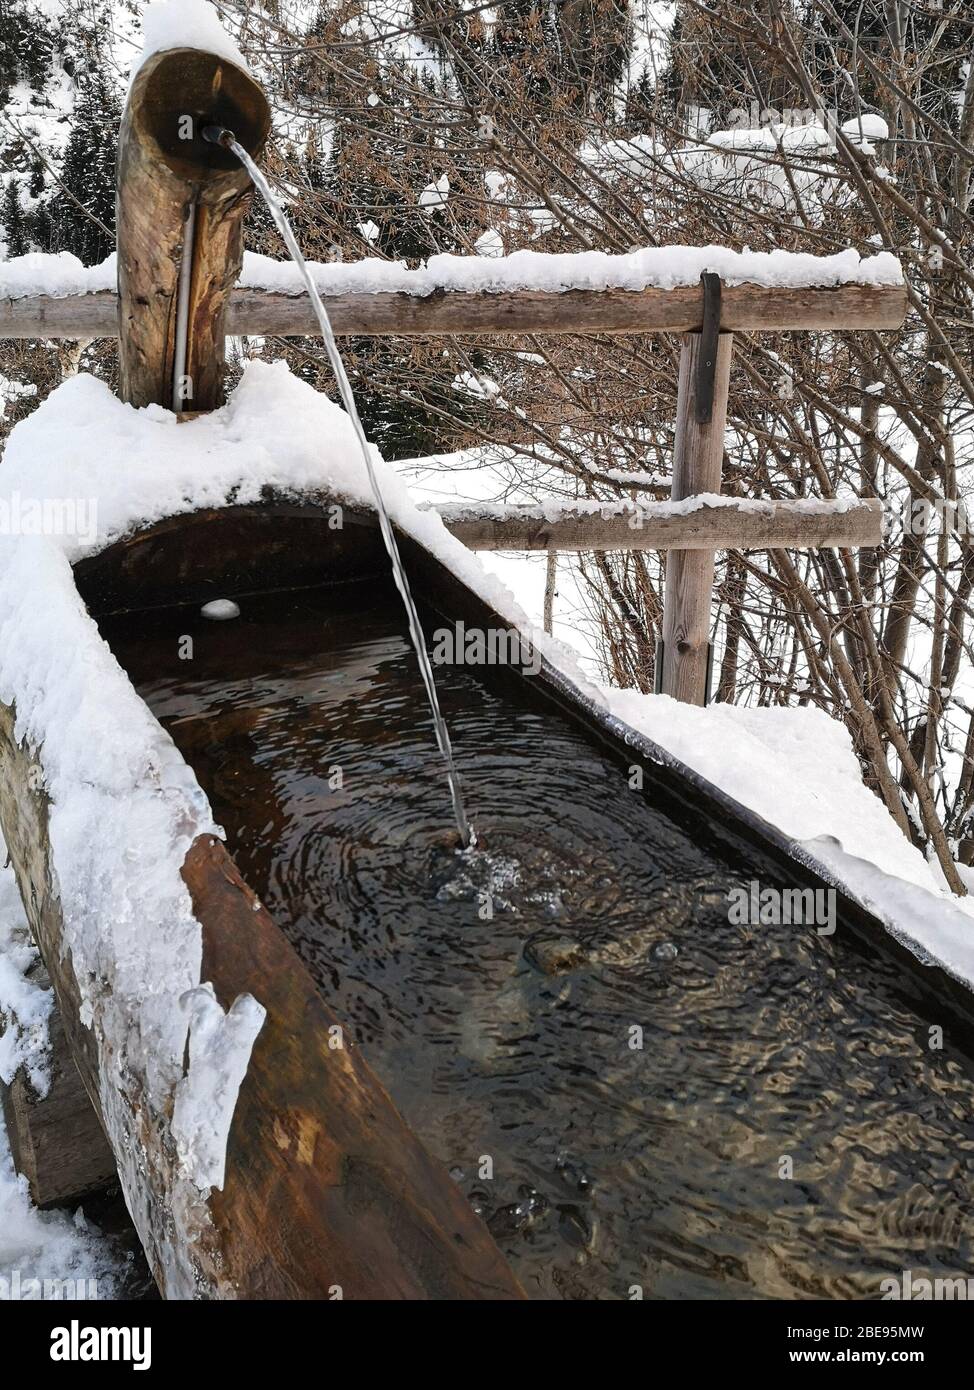 Fontaine de montagne faite d'un tronc en bois creusé à l'intérieur recouvert de neige en hiver. Banque D'Images